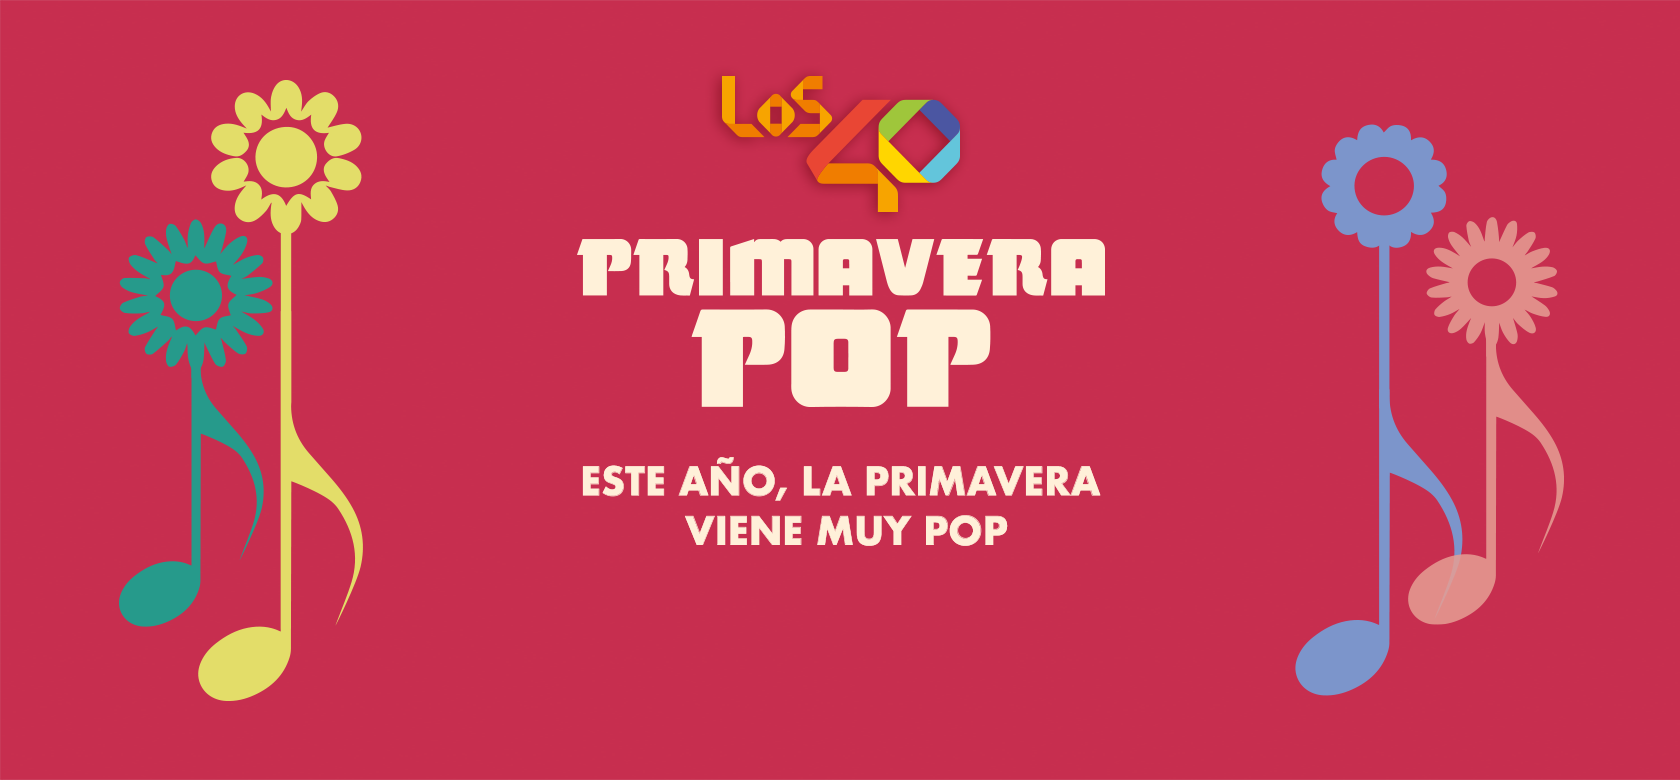 LOS40 PRIMAVERA POP 2019